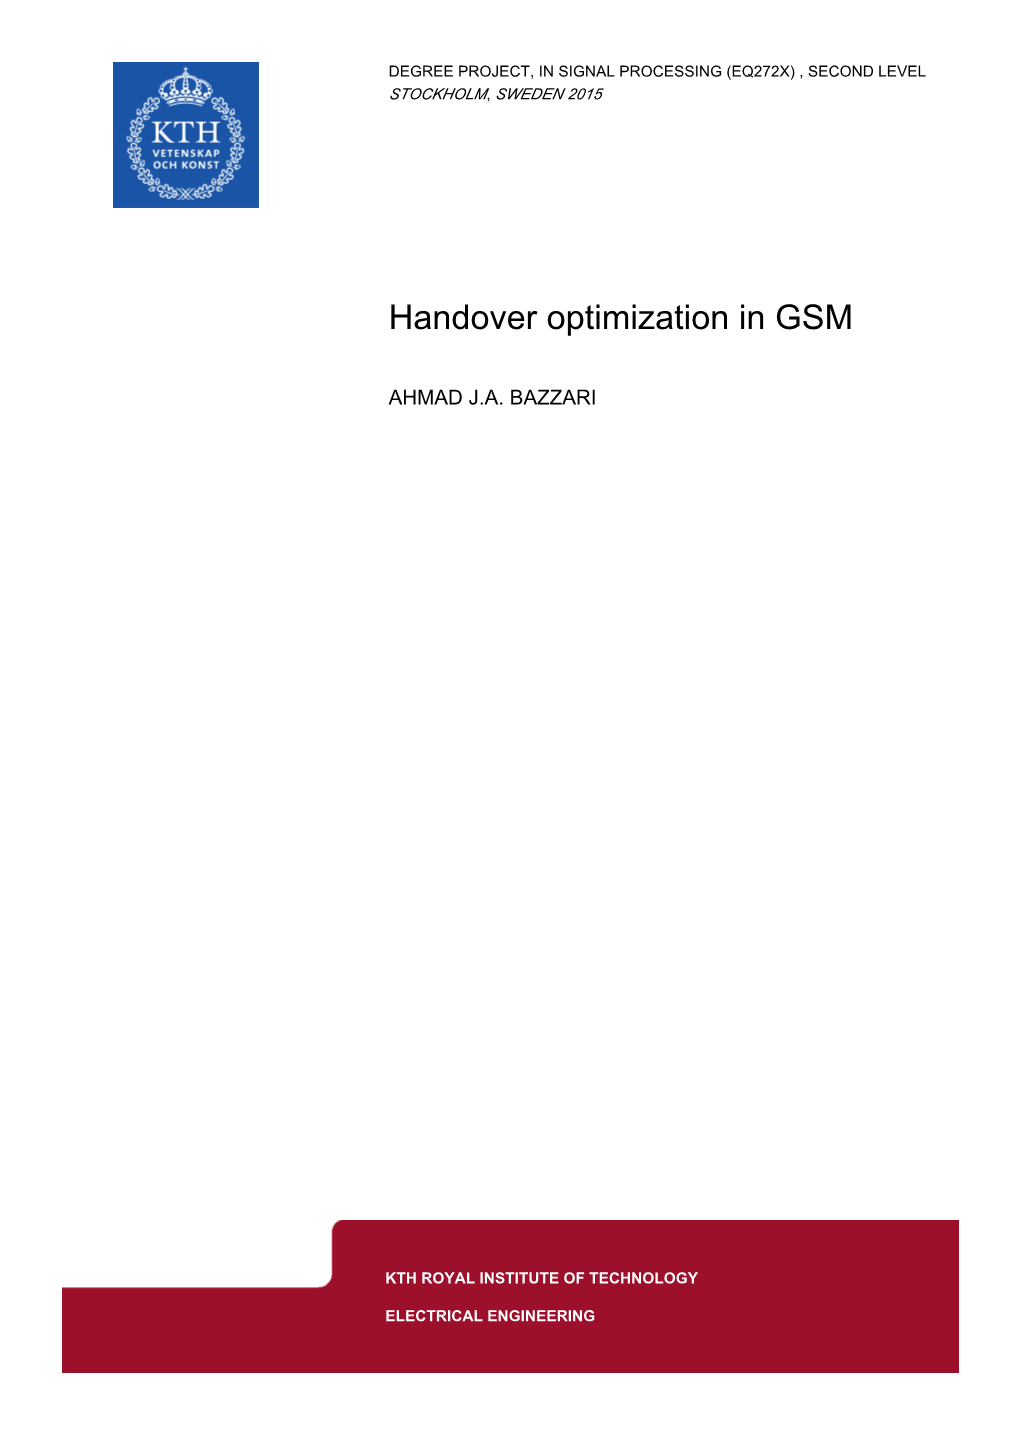 Handover Optimization in GSM